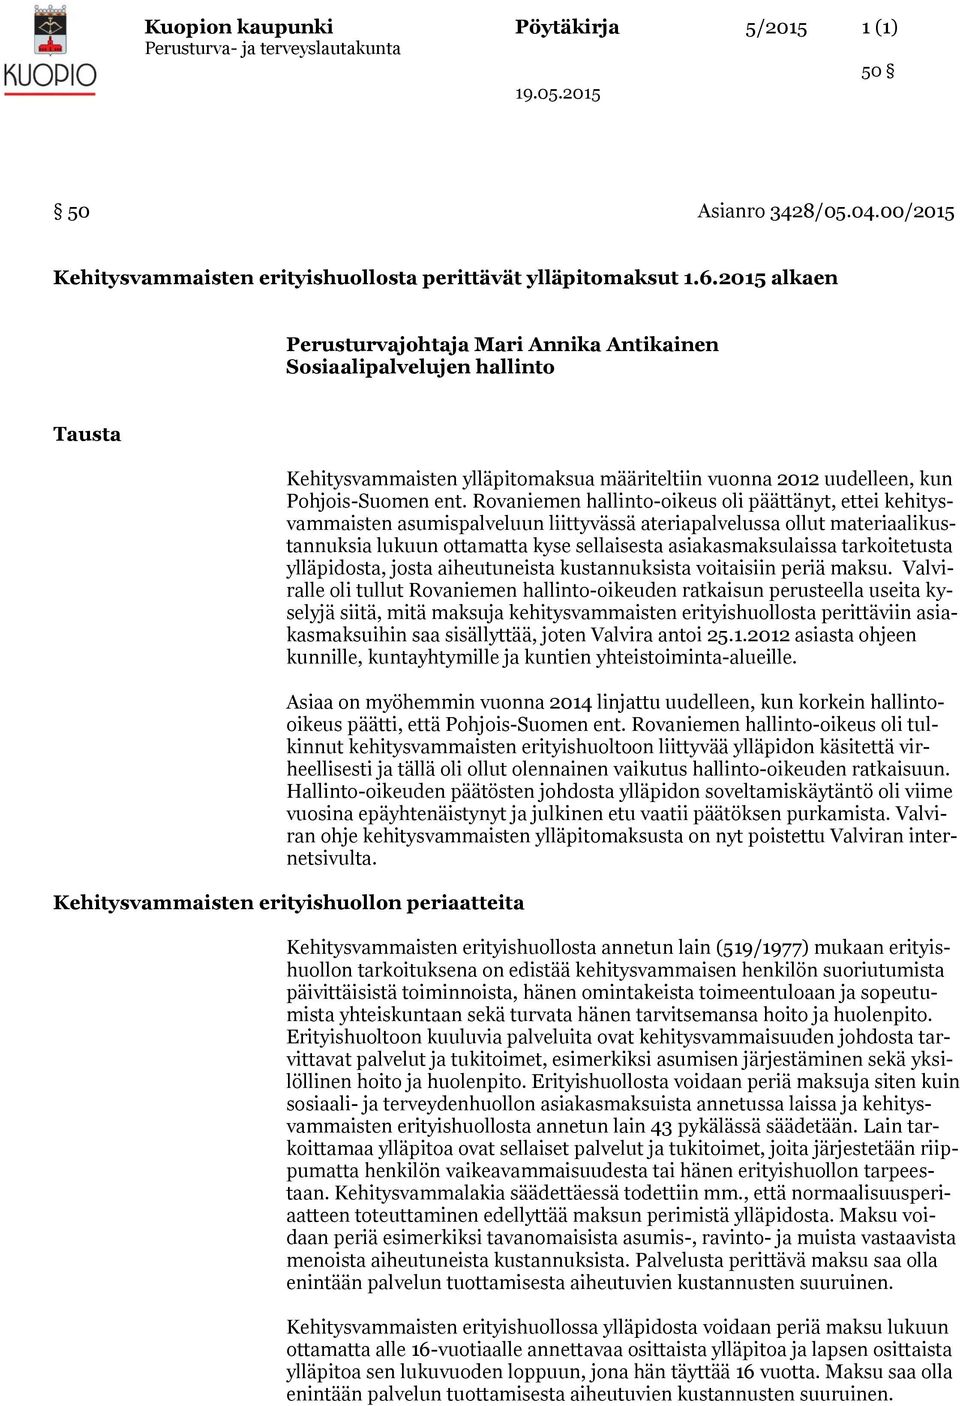 Rovaniemen hallinto-oikeus oli päättänyt, ettei kehitysvammaisten asumispalveluun liittyvässä ateriapalvelussa ollut materiaalikustannuksia lukuun ottamatta kyse sellaisesta asiakasmaksulaissa